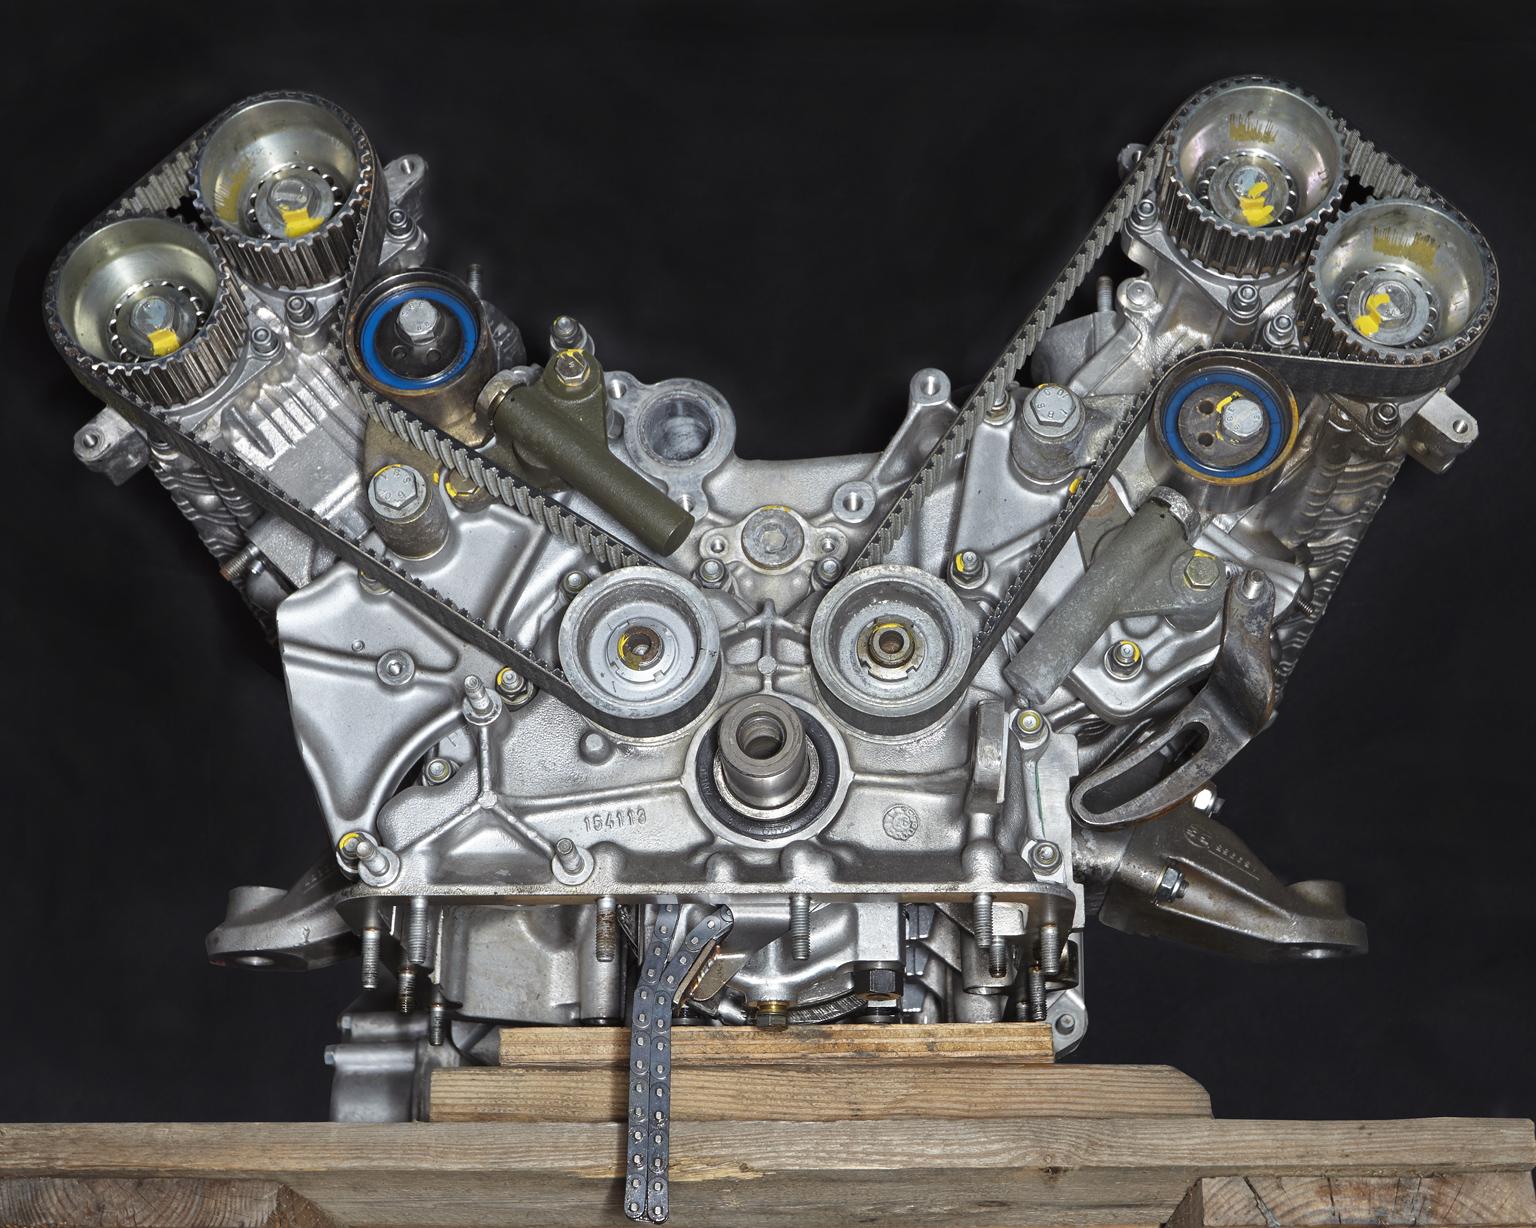 Automobili IV - large format photograph of iconic Ferrari Maranello V12 engine